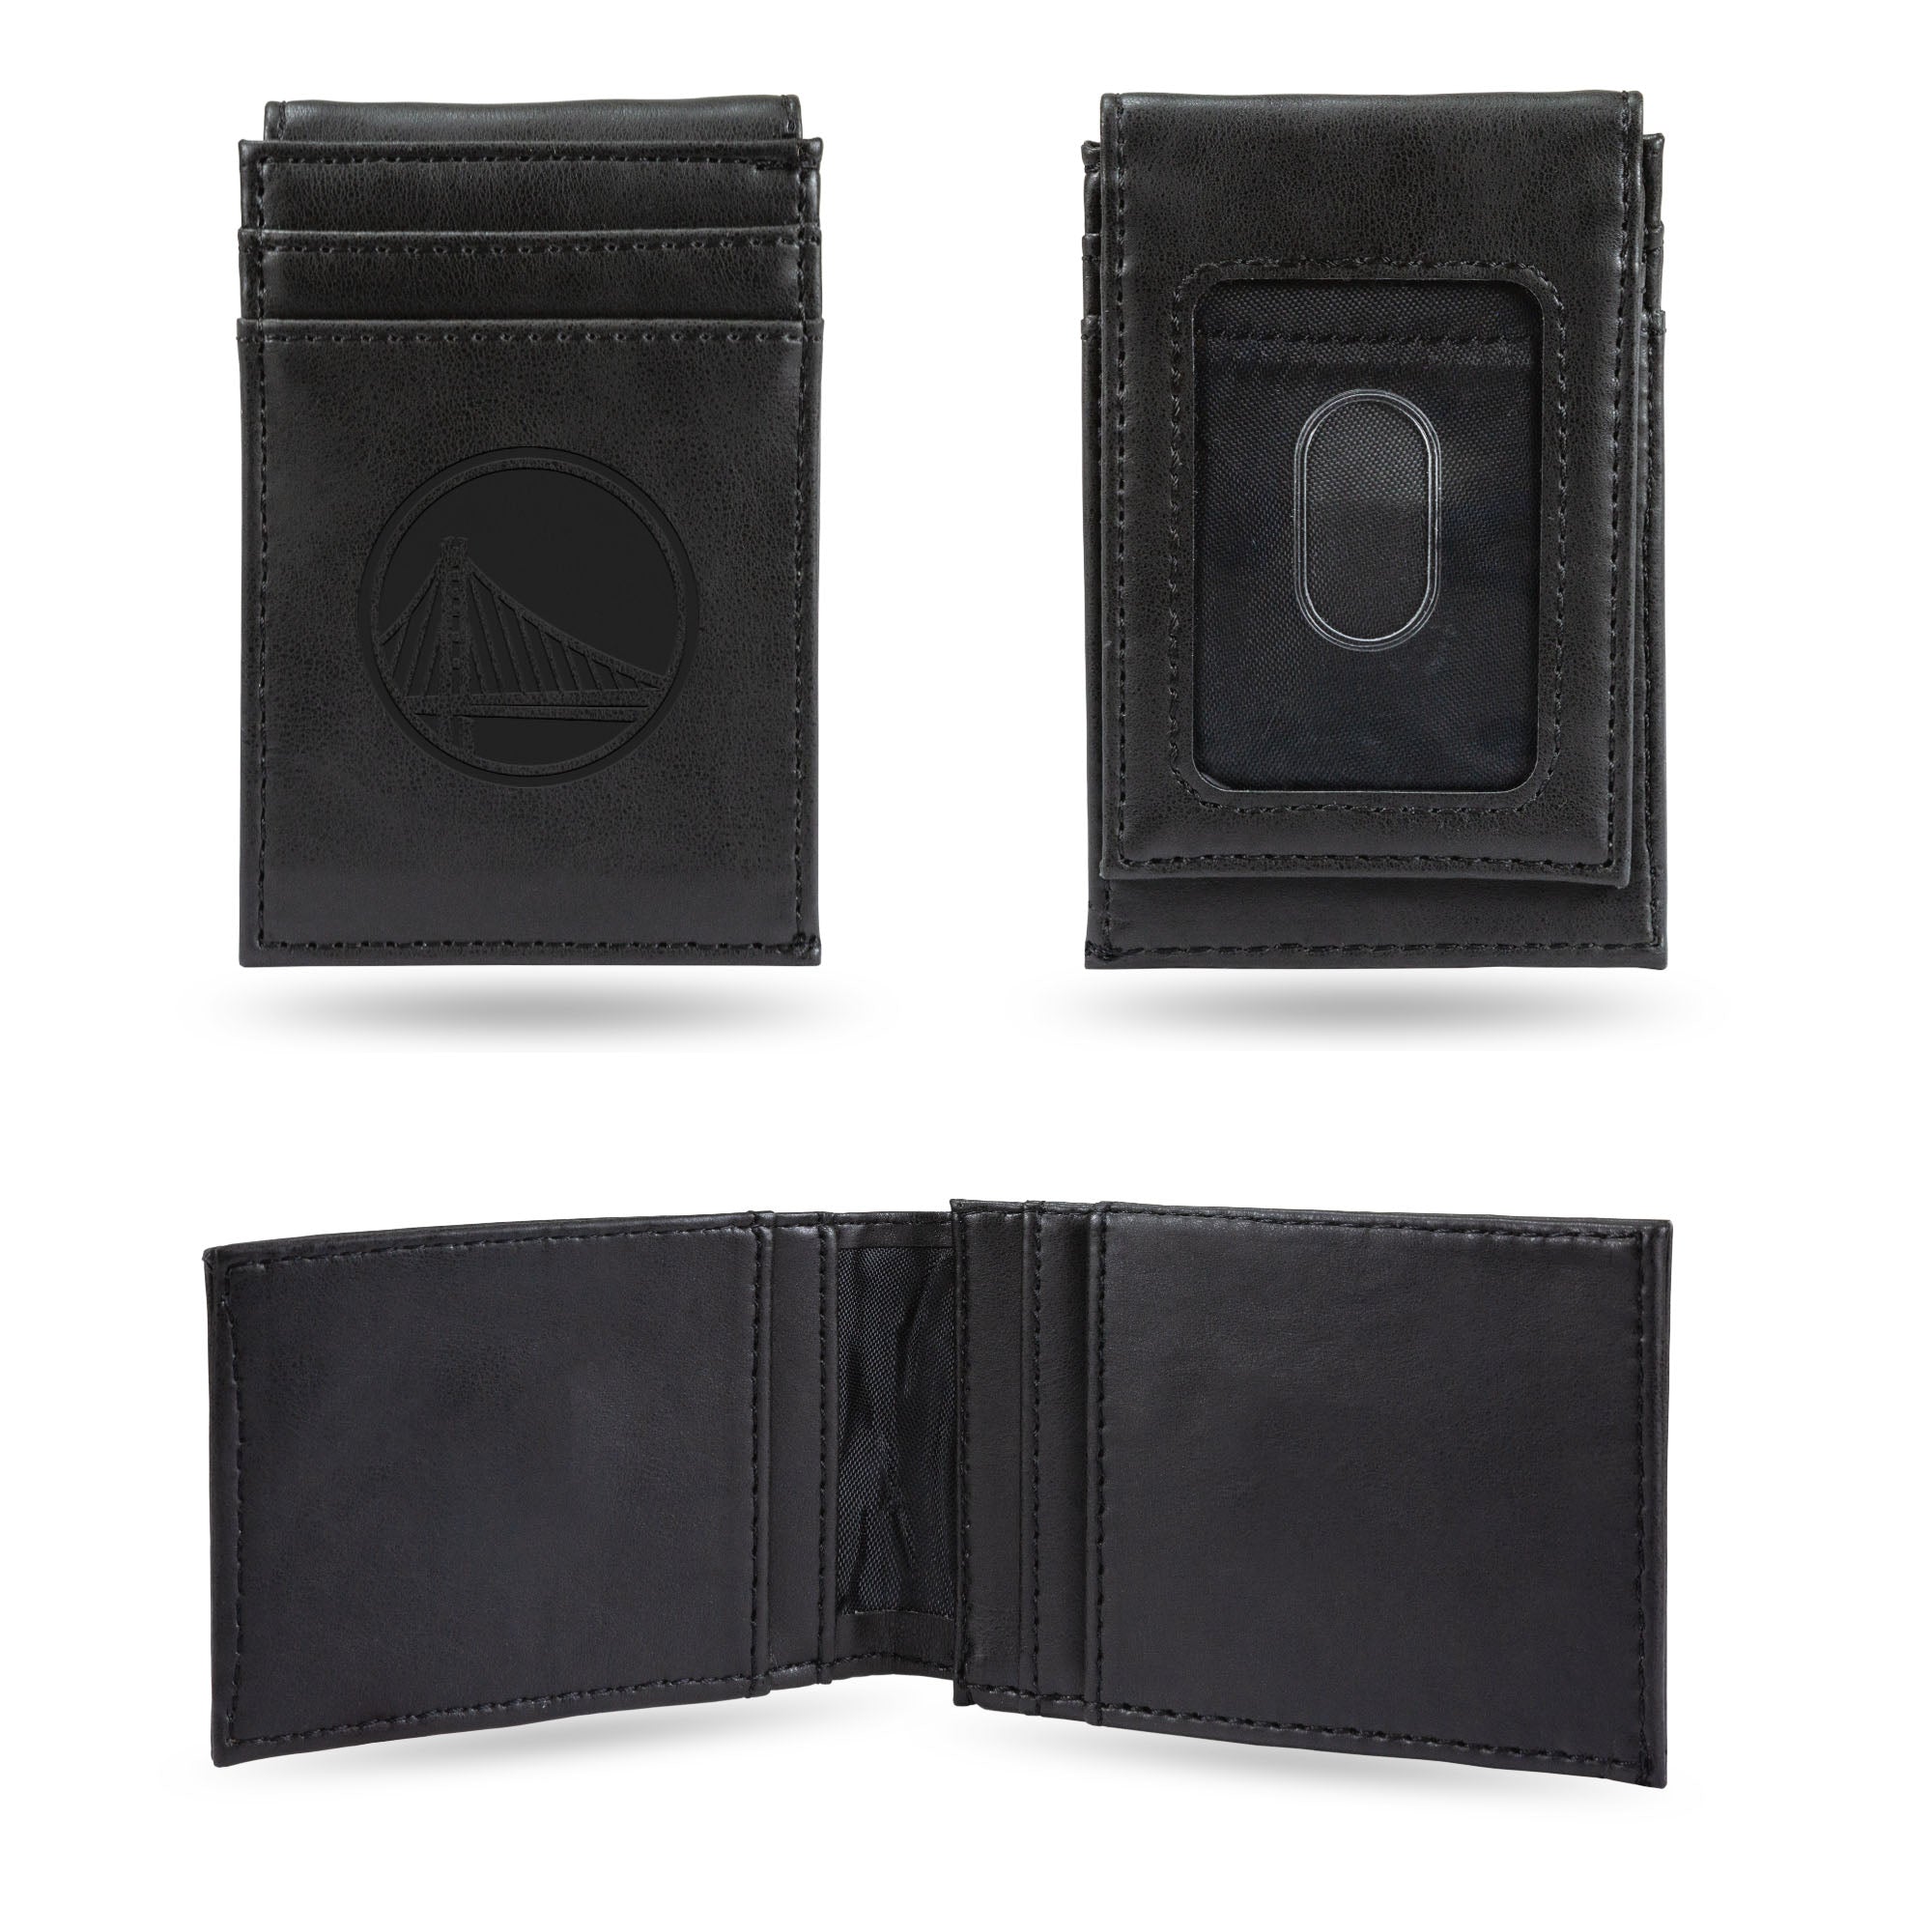 Golden State Warriors Black Laser Engraved Front Pocket Wallet